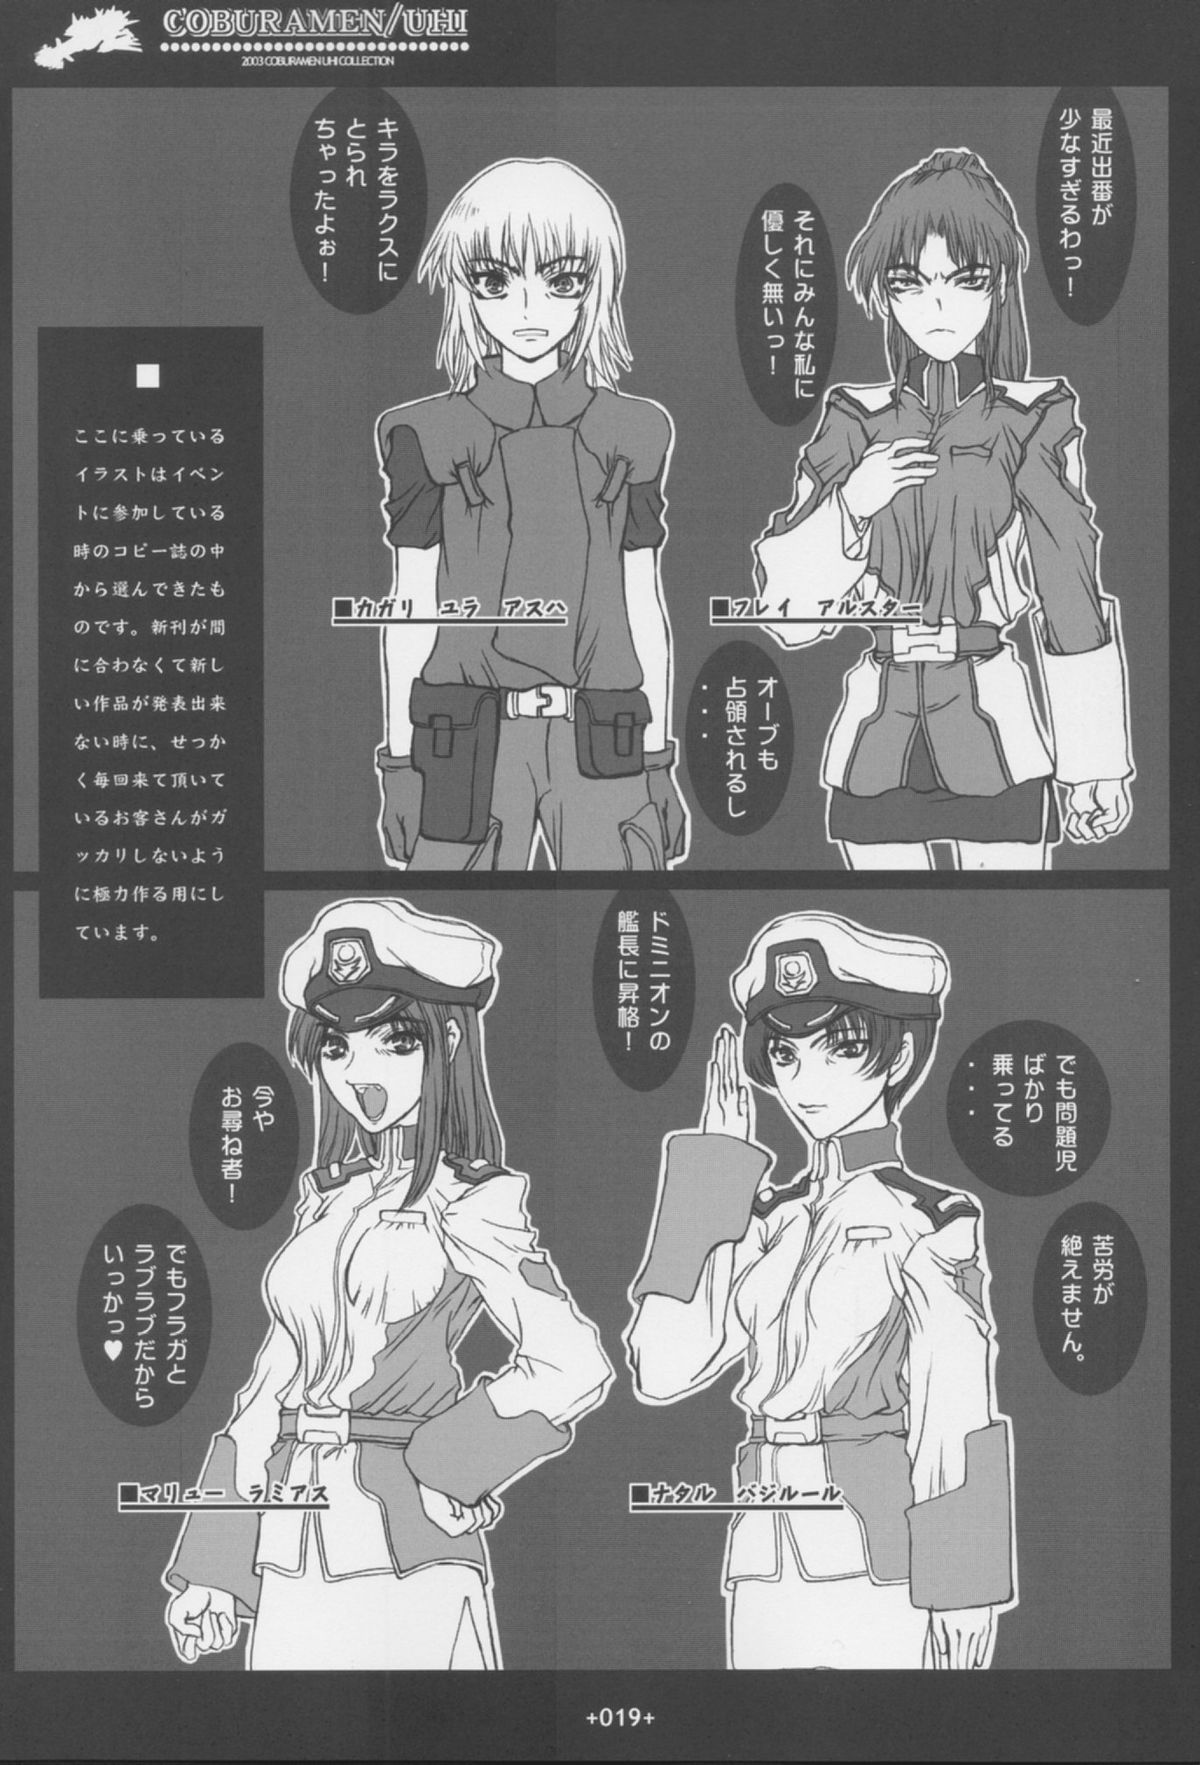 [Coburamenman (Uhhii)] GS (Gundam Seed) page 20 full